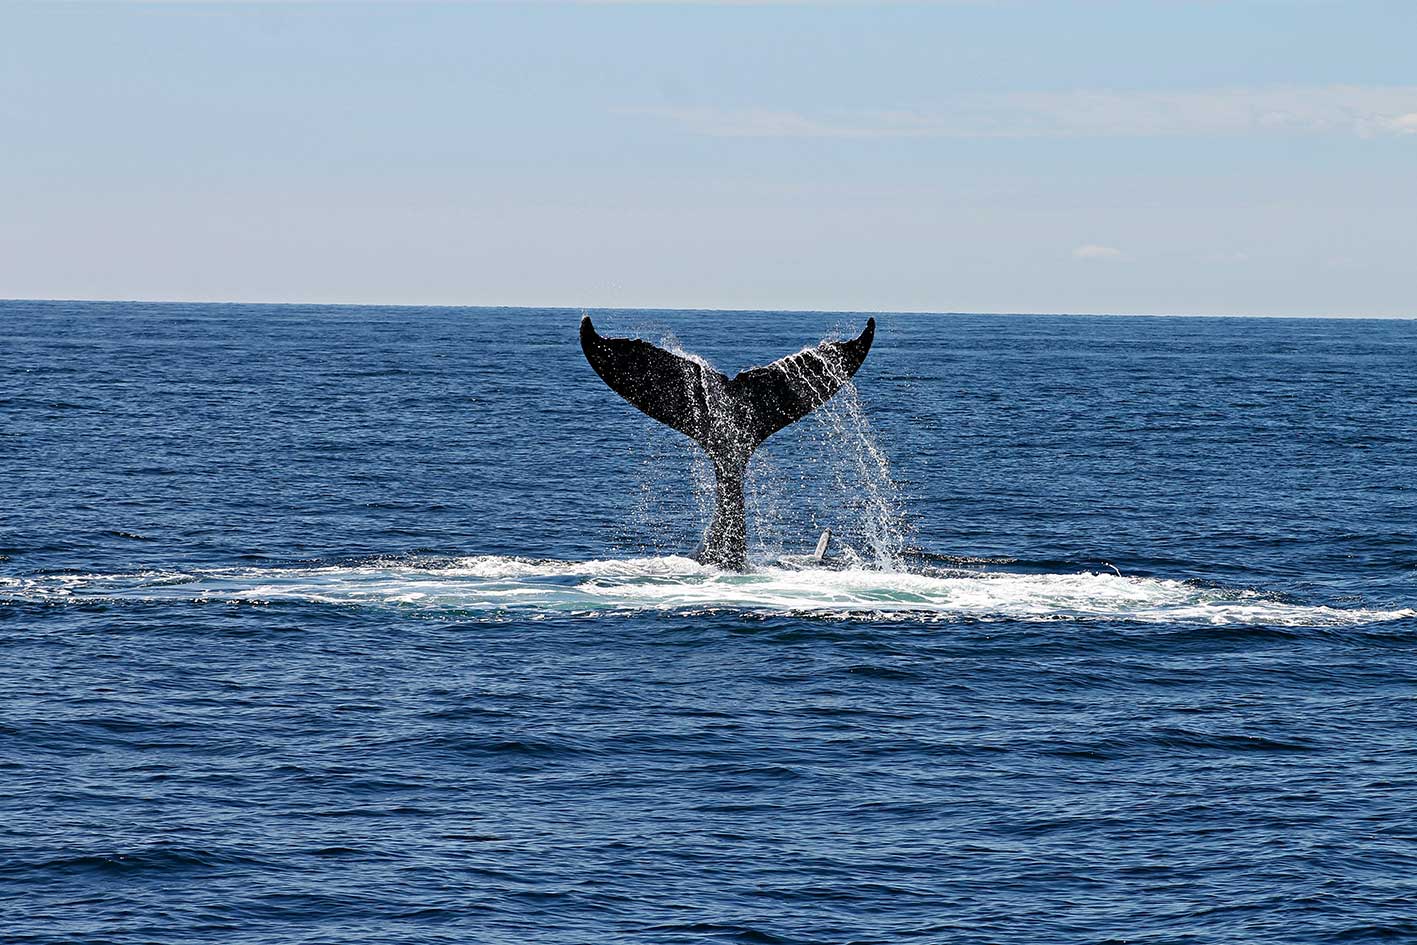 zu sehen ist ein Wal im Meer. Beim Whaling geht es um die dicken Fische (bzw. Säugetiere): Die Führungskräfte. Bild: Pexels/Andrea Holien